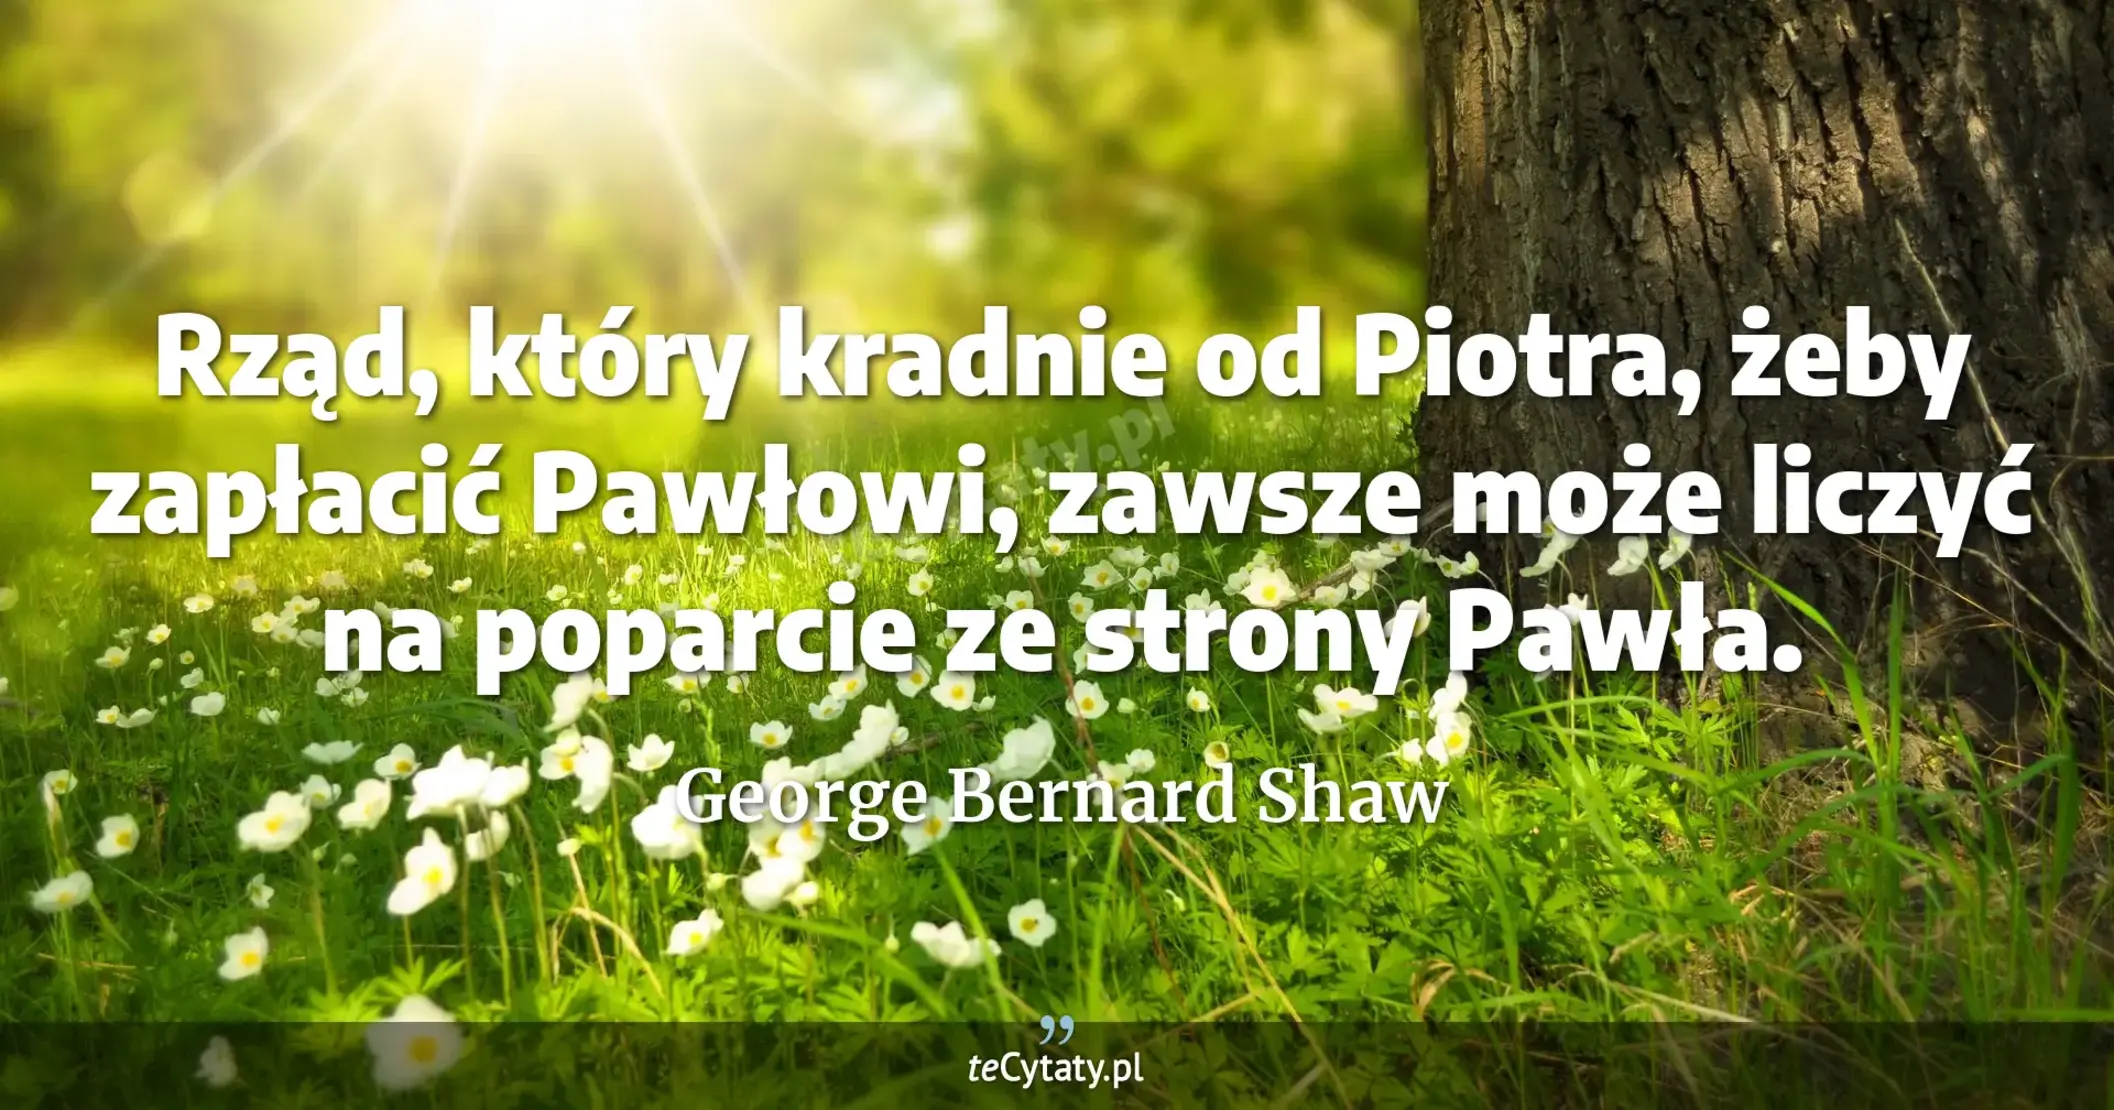 Rząd, który kradnie od Piotra, żeby zapłacić Pawłowi, zawsze może liczyć na poparcie ze strony Pawła. - George Bernard Shaw